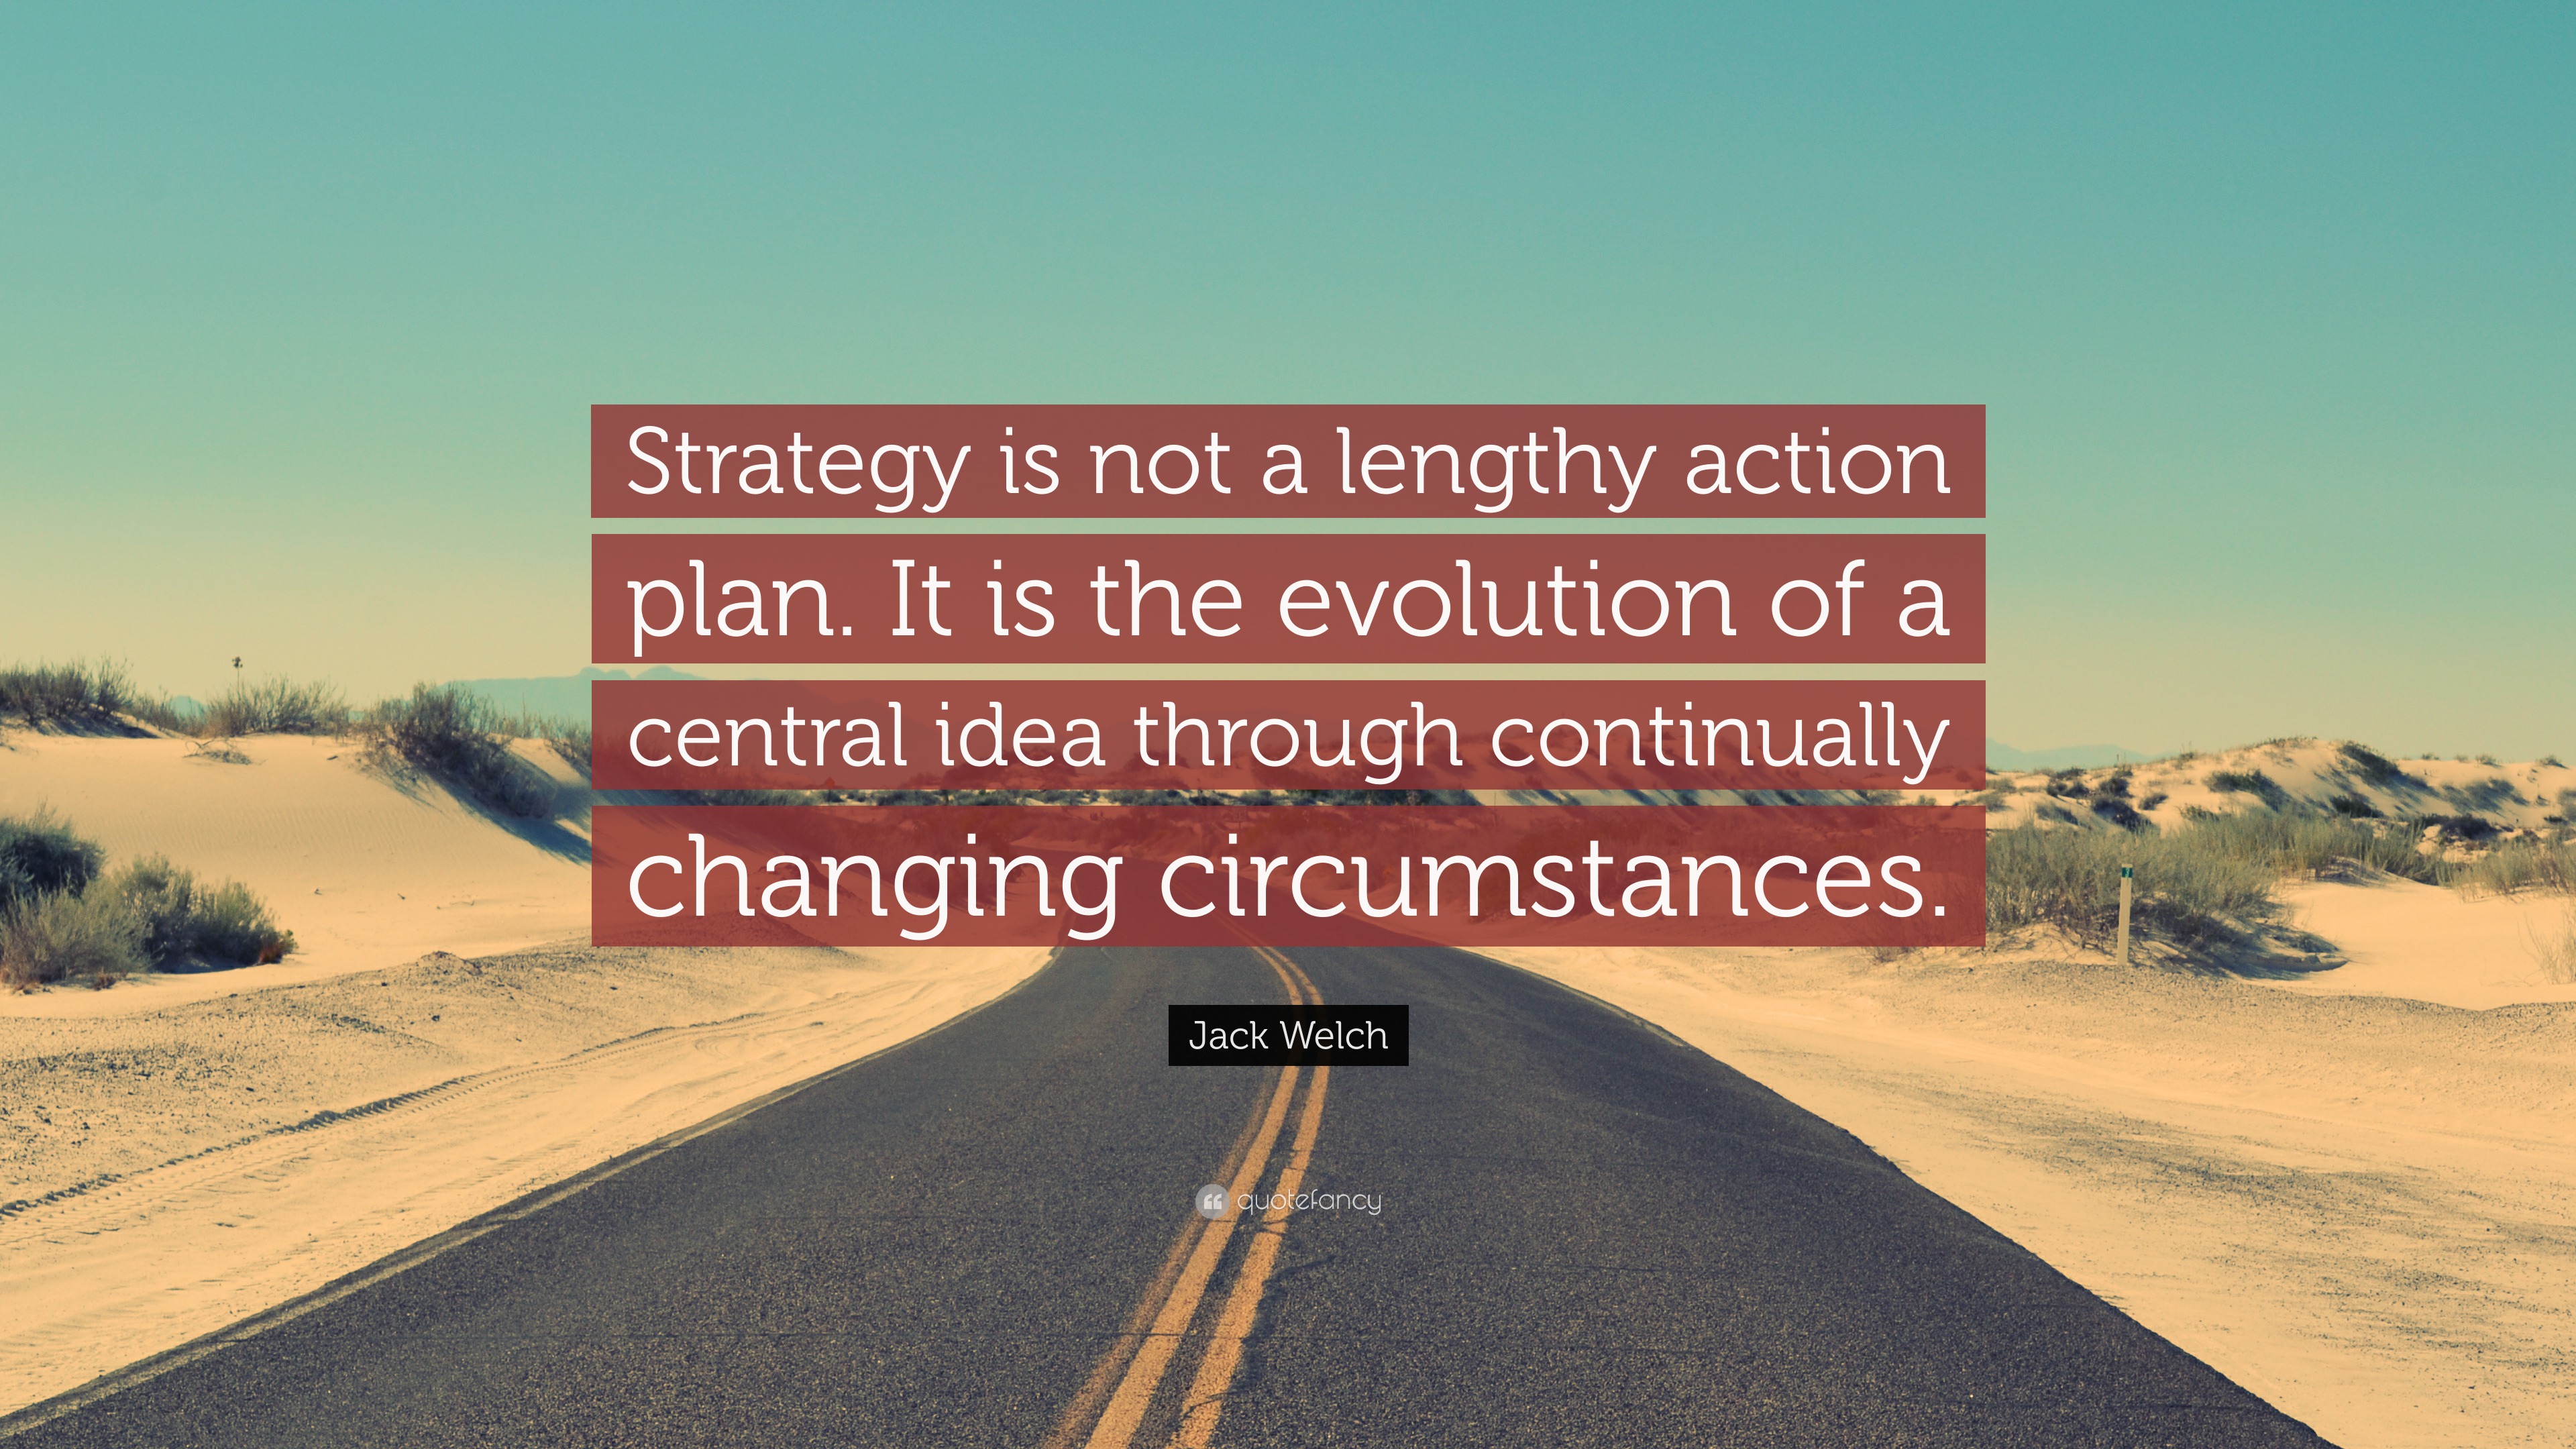 strategic planning quotes